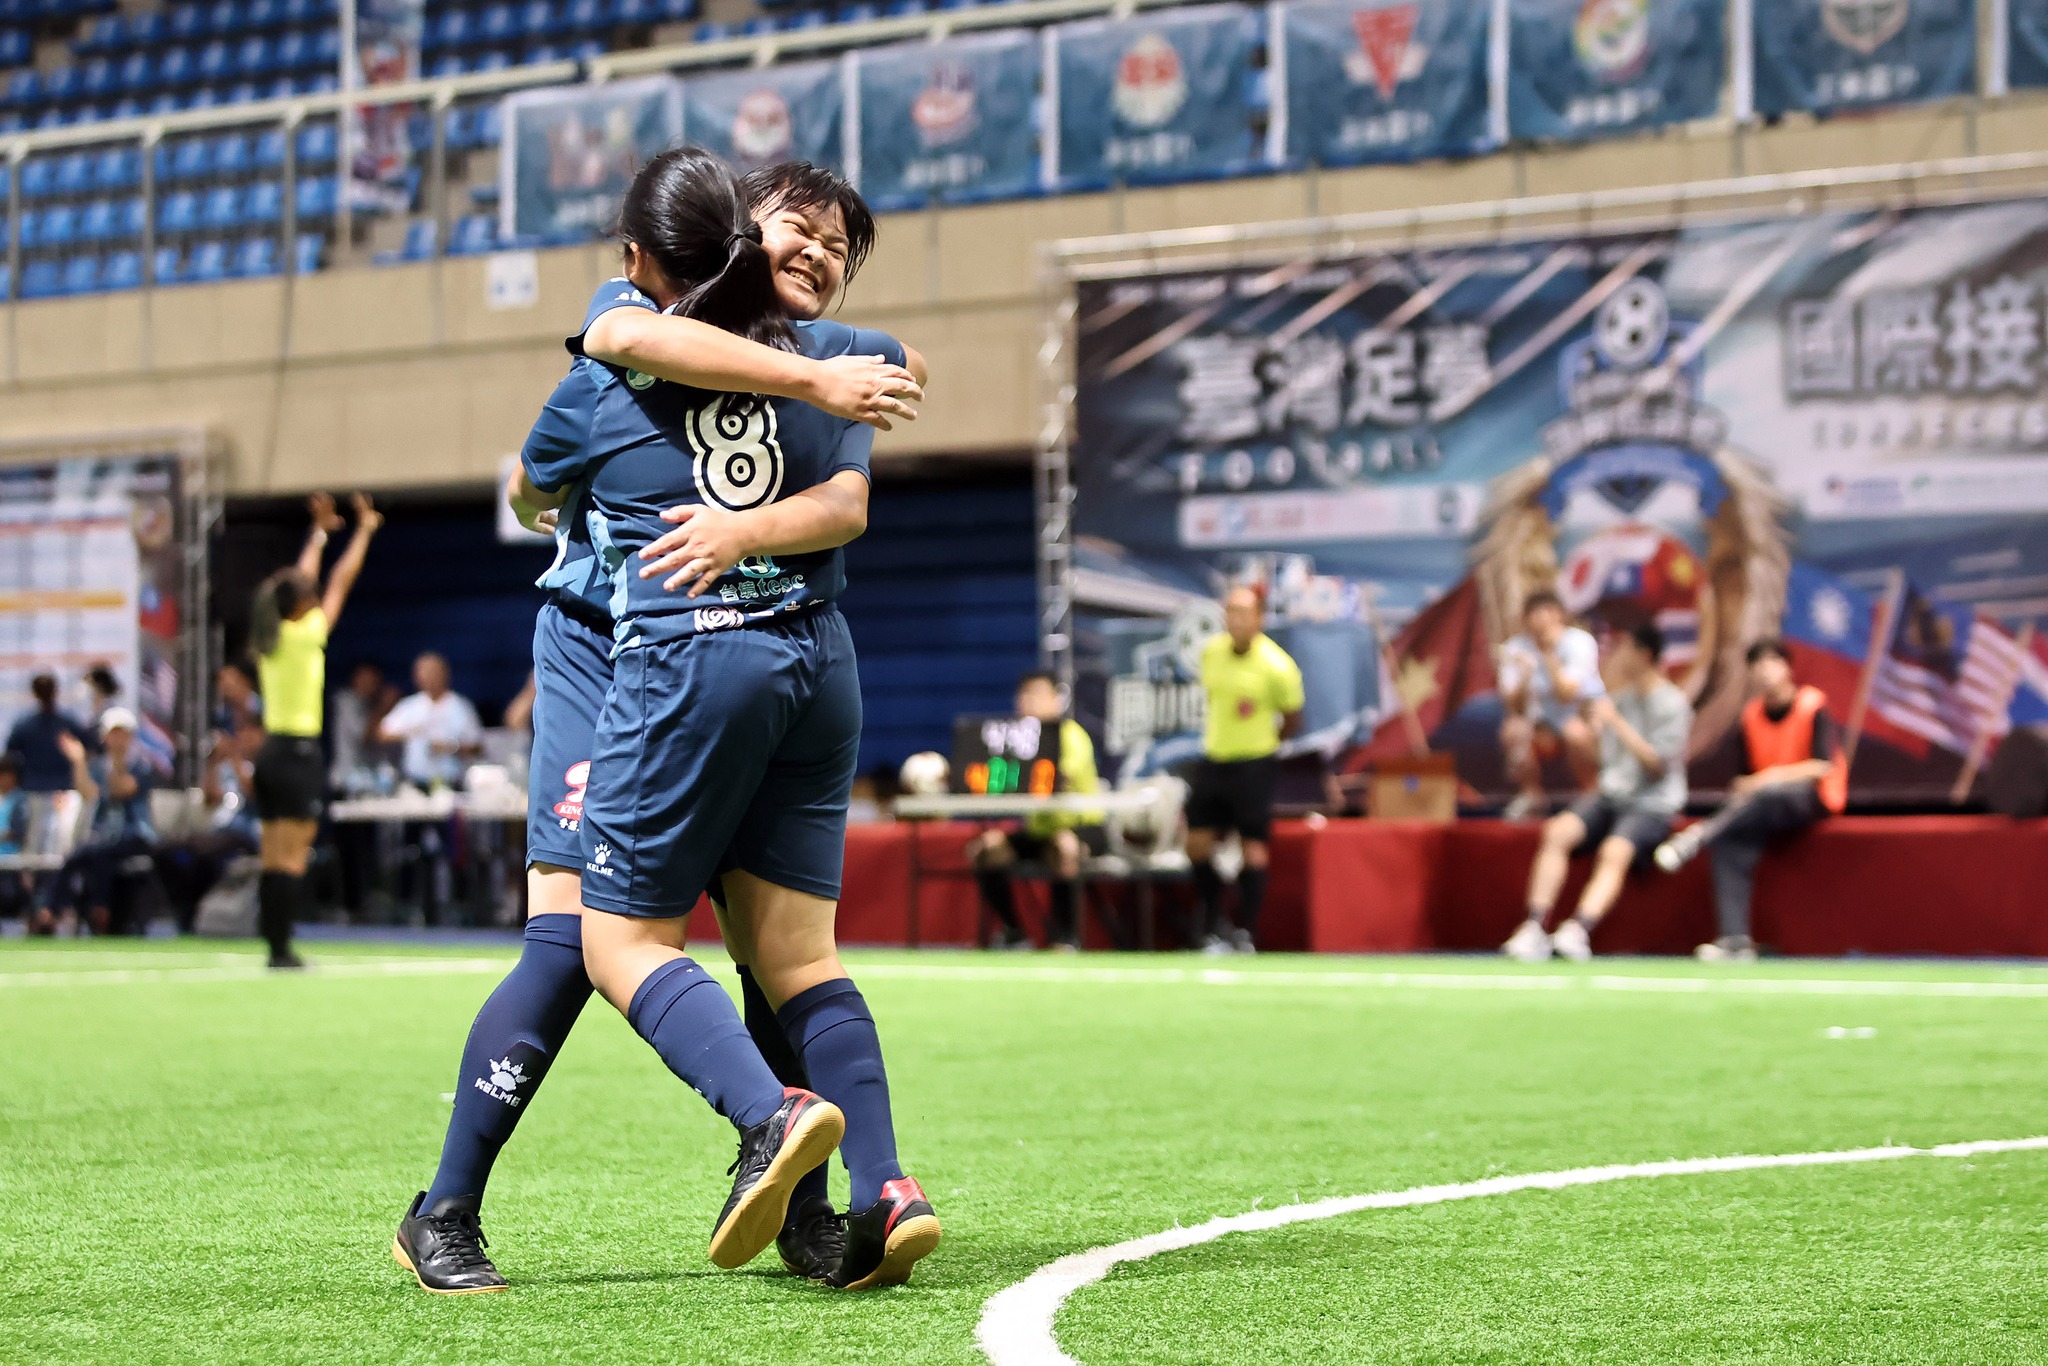 Đội tuyển trường tiểu học Dong-li, Hoa Liên giành chiến thắng chung cuộc ở bảng nữ. (Ảnh: Lấy từ Facebook “Giải bóng đá giao hữu quốc tế Cup tiểu học Đài Loan”)